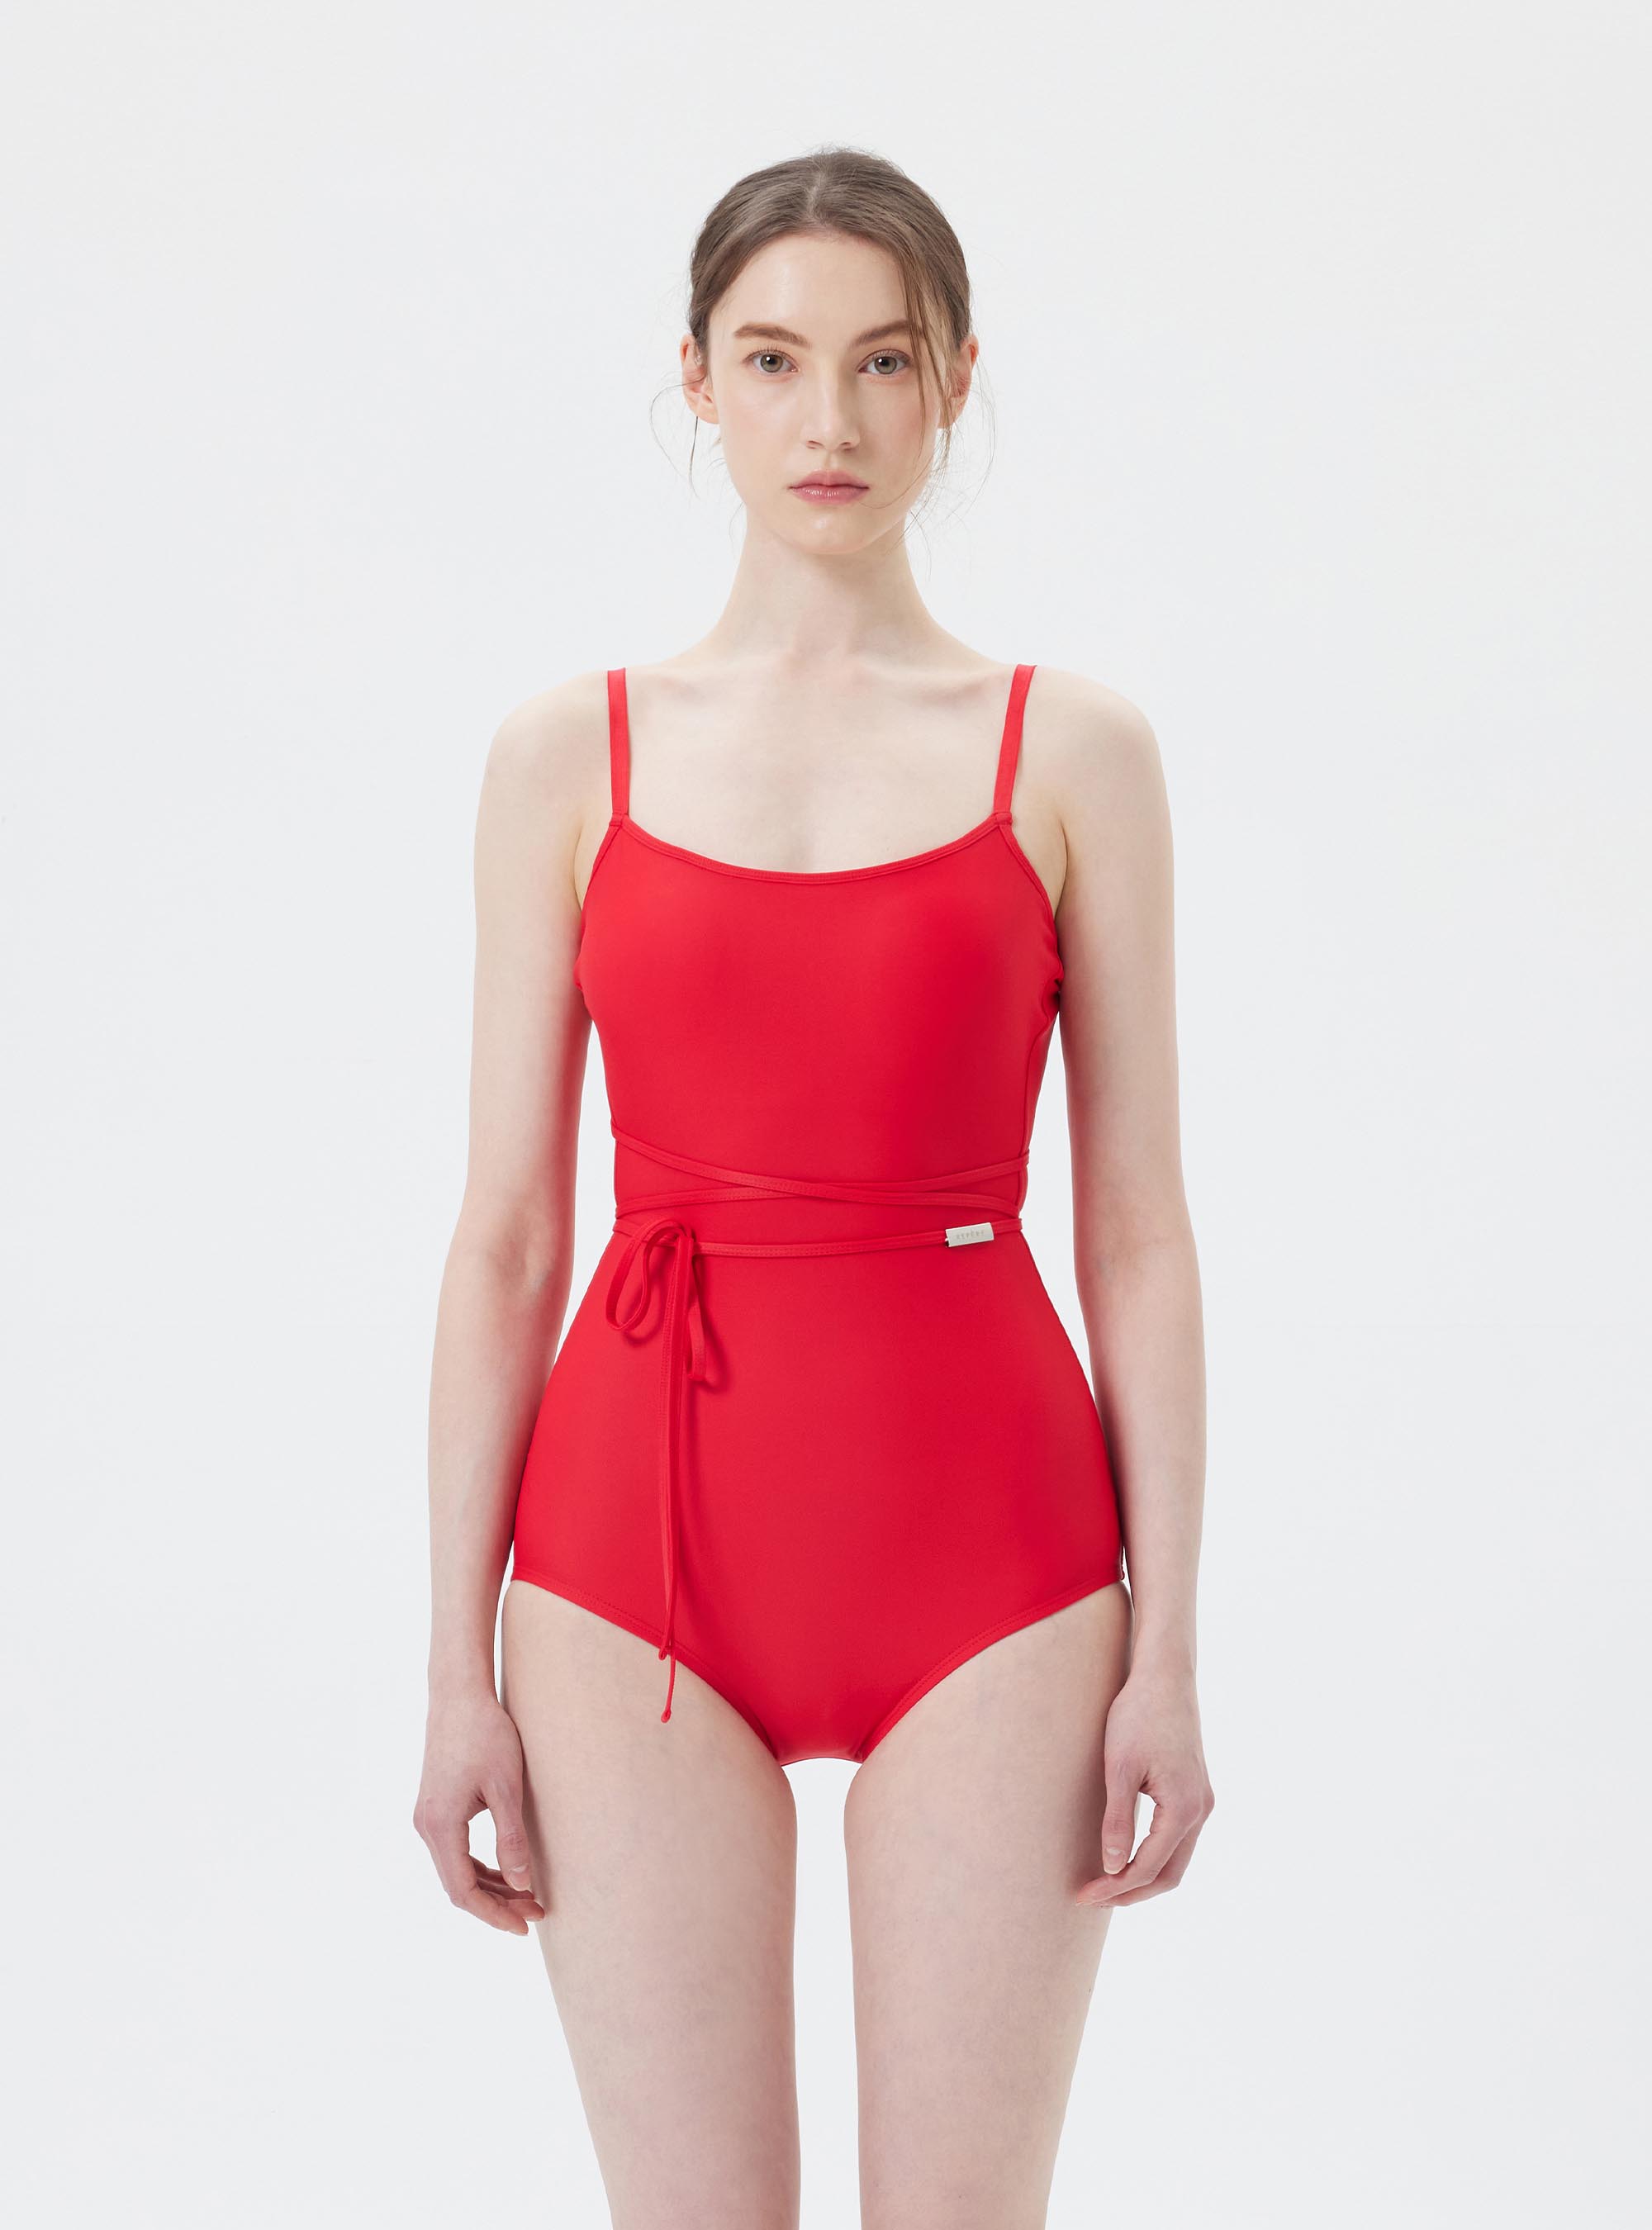 신시아 원피스 스윔수트  Cynthia one-piece swimsuit (2color)